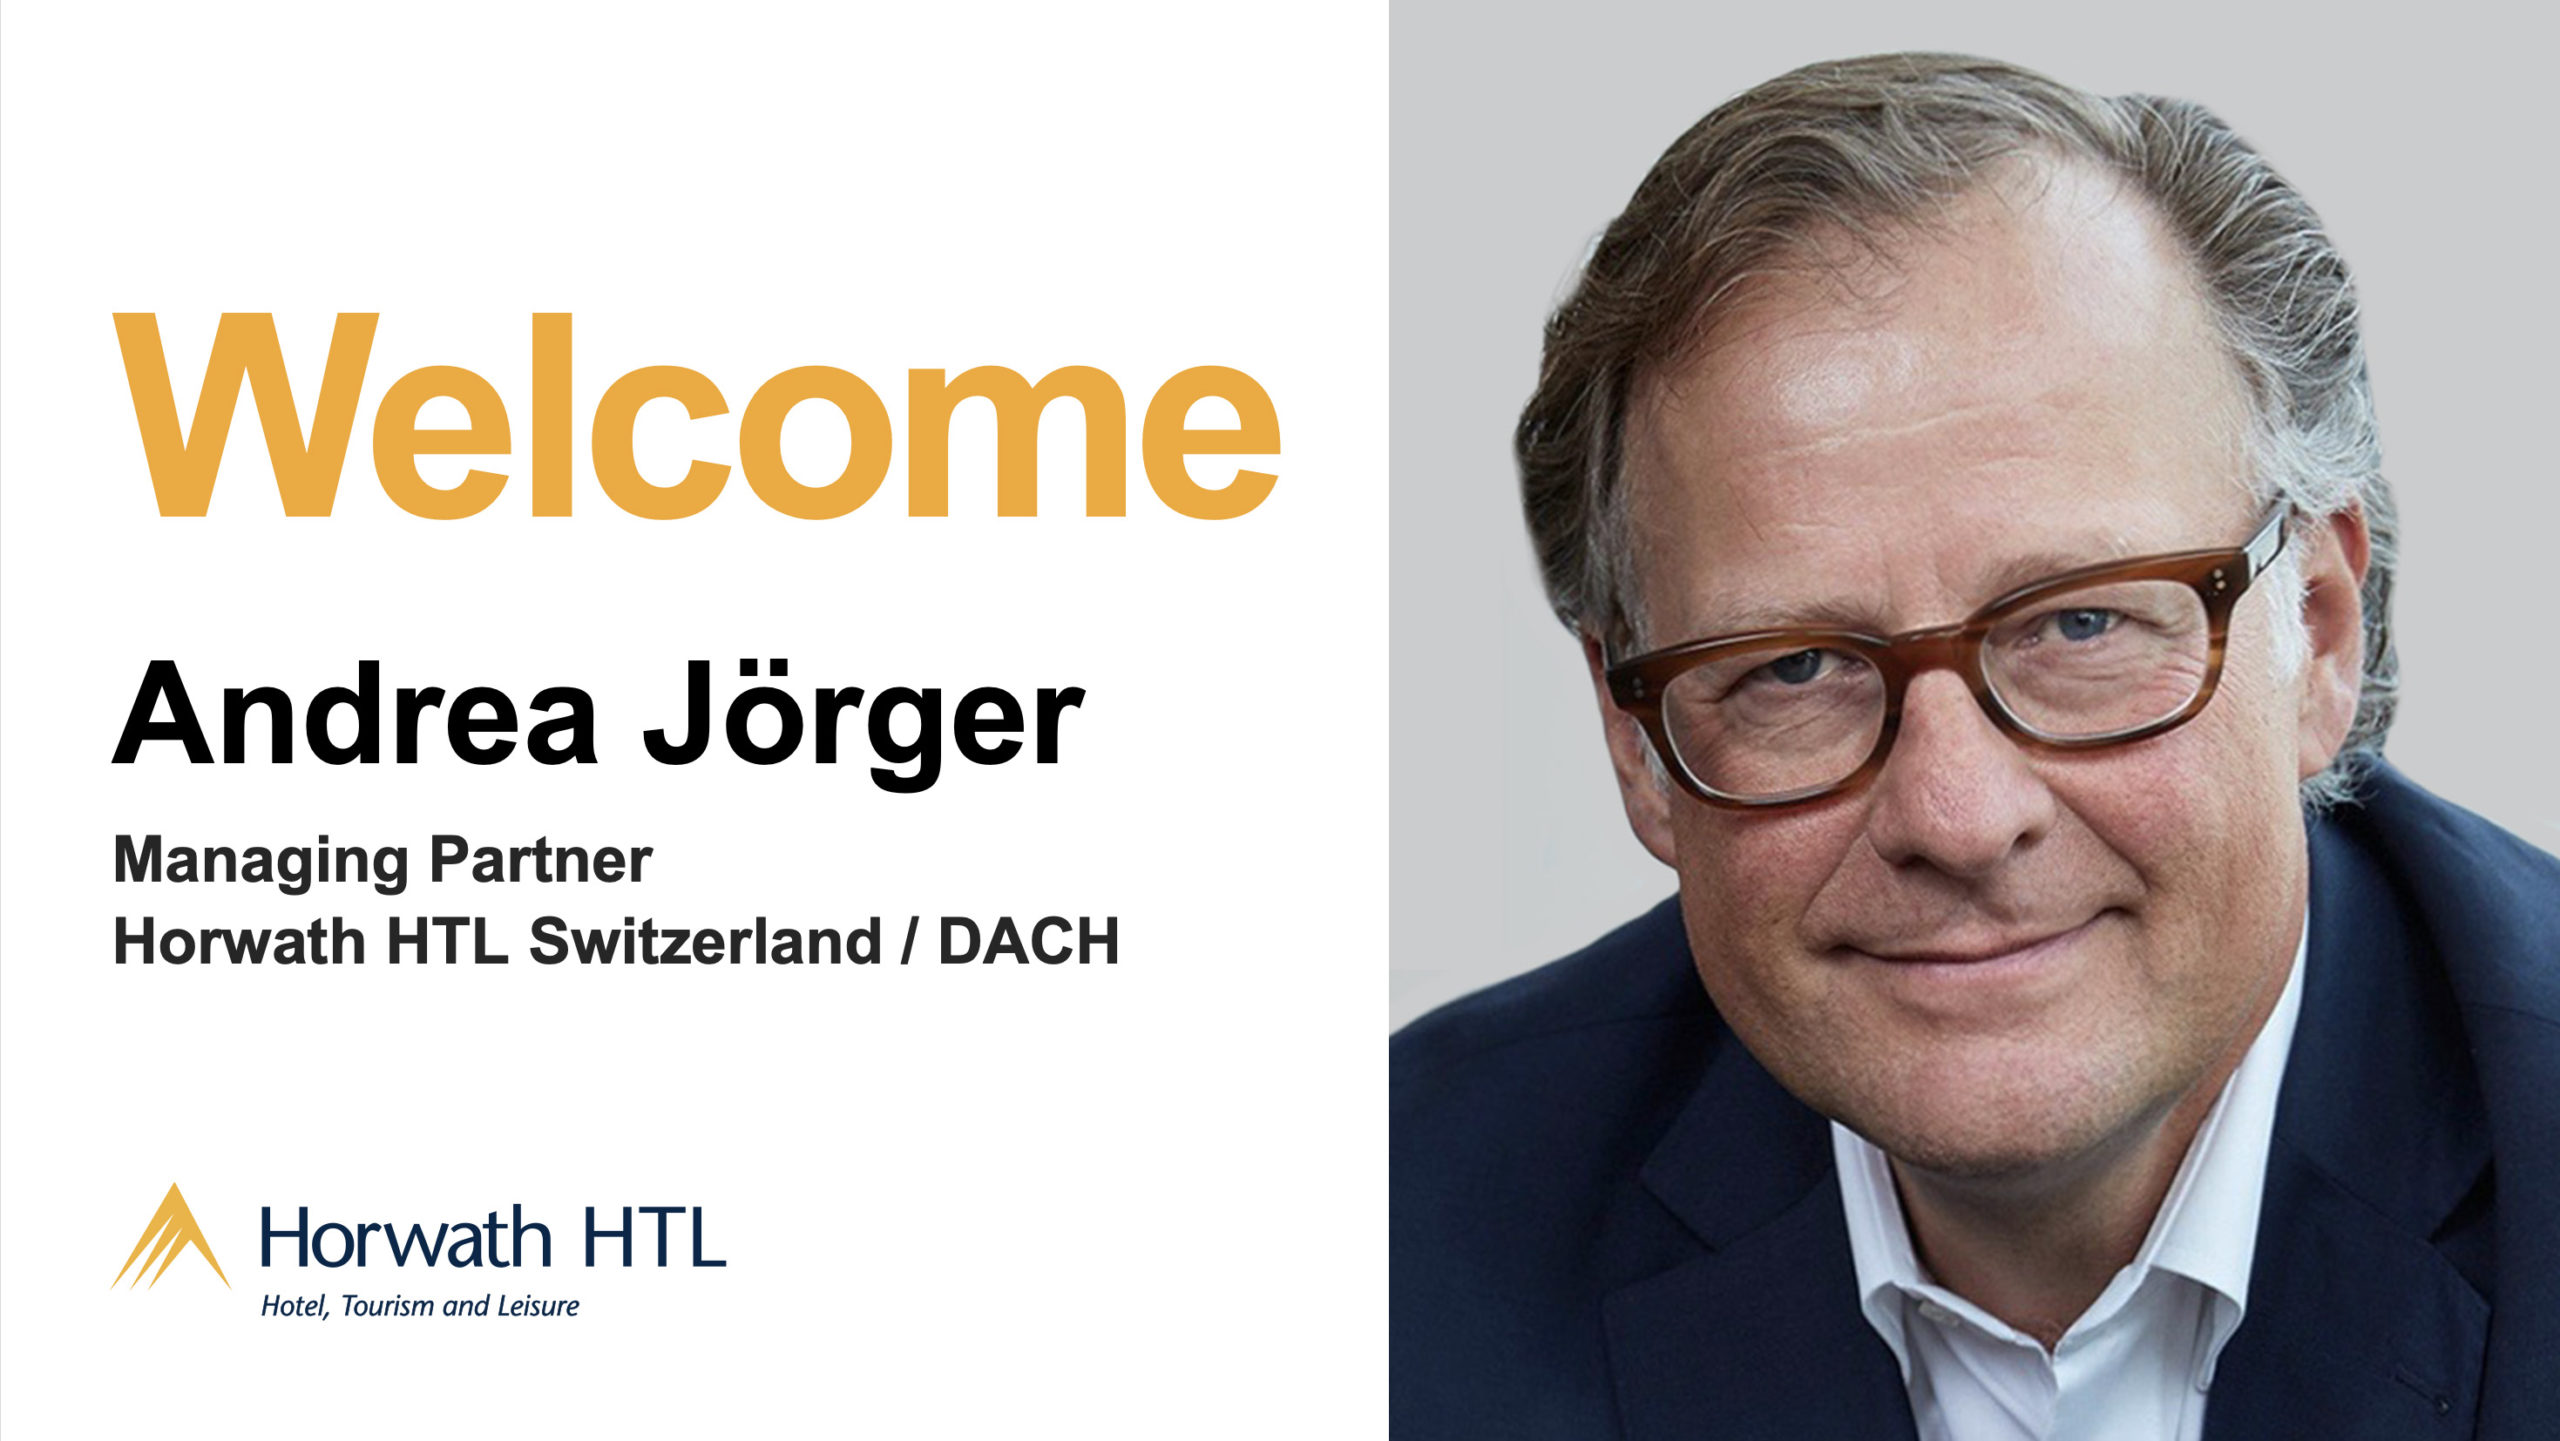 Andrea Jörger Joins Horwath HTL, Switzerland as New Managing Partner